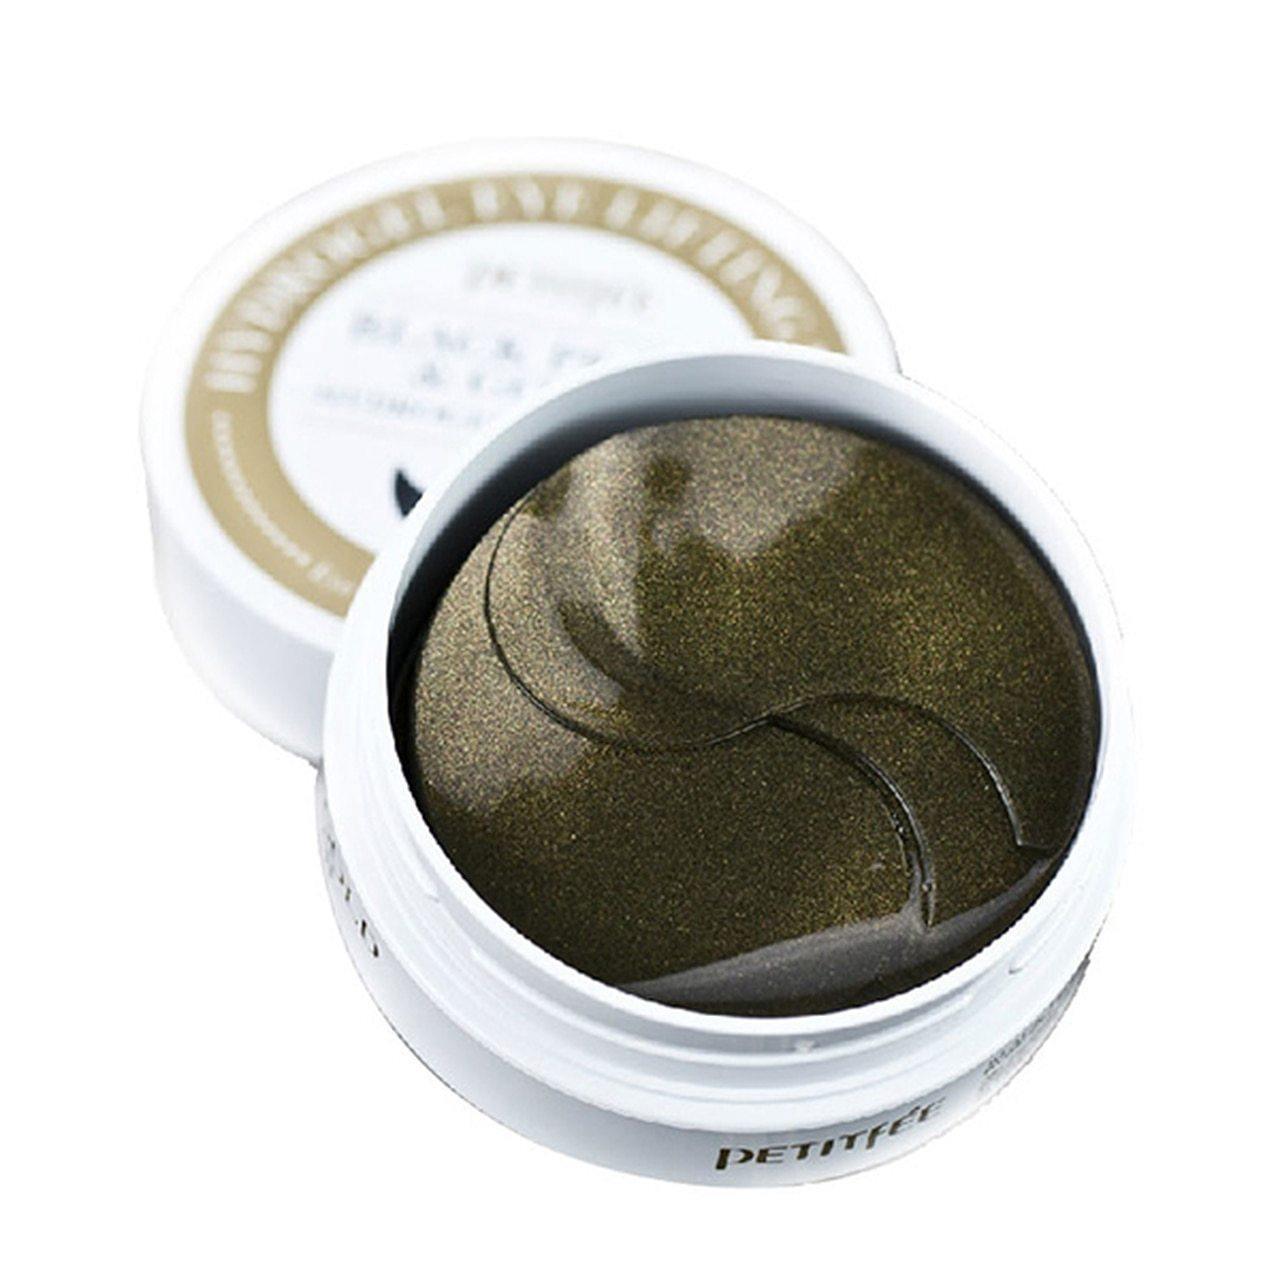 PETITFEE Black Pearl & Gold Hydrogel Eye Patch 60pcs 